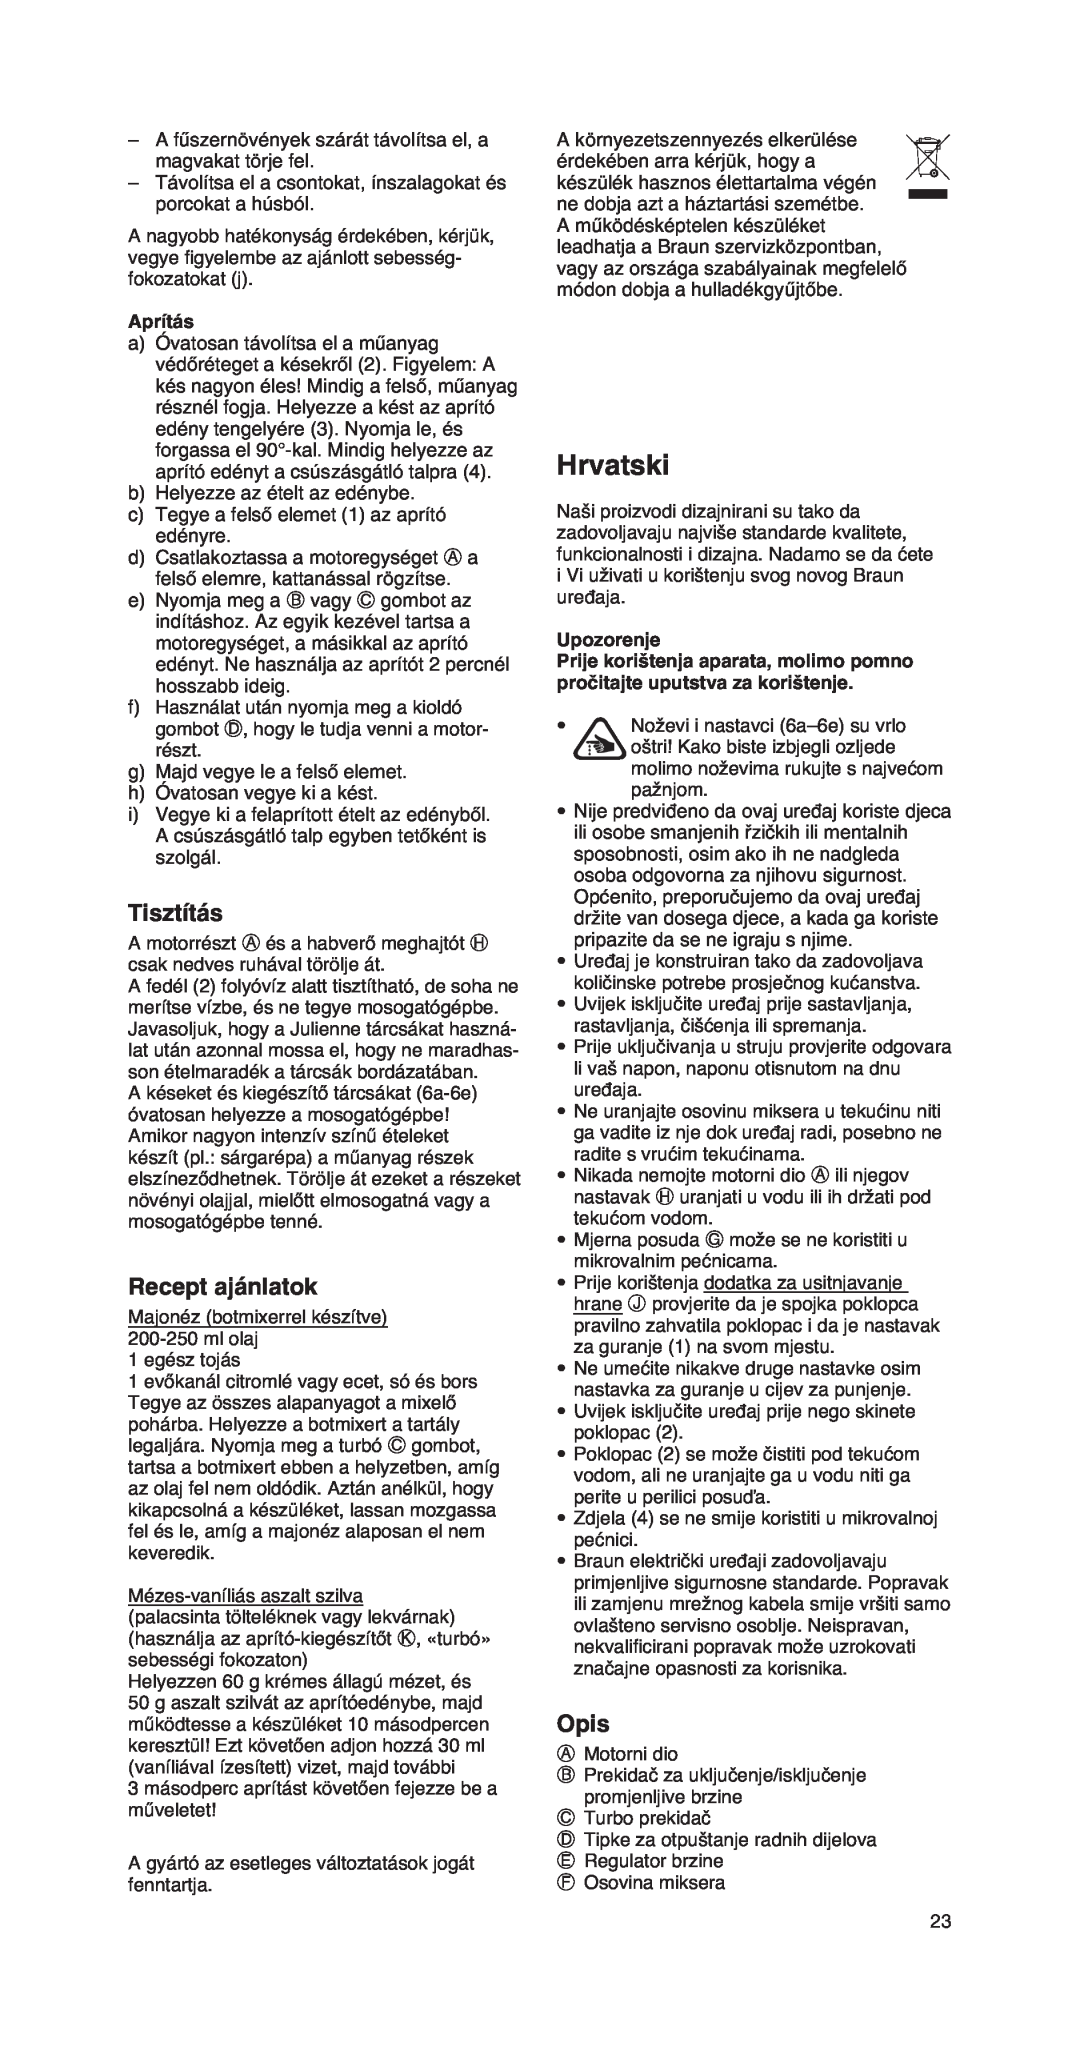 Braun MR 550 Buffet manual Hrvatski, Tisztítás, Recept ajánlatok, Aprítás, Upozorenje, Opis 